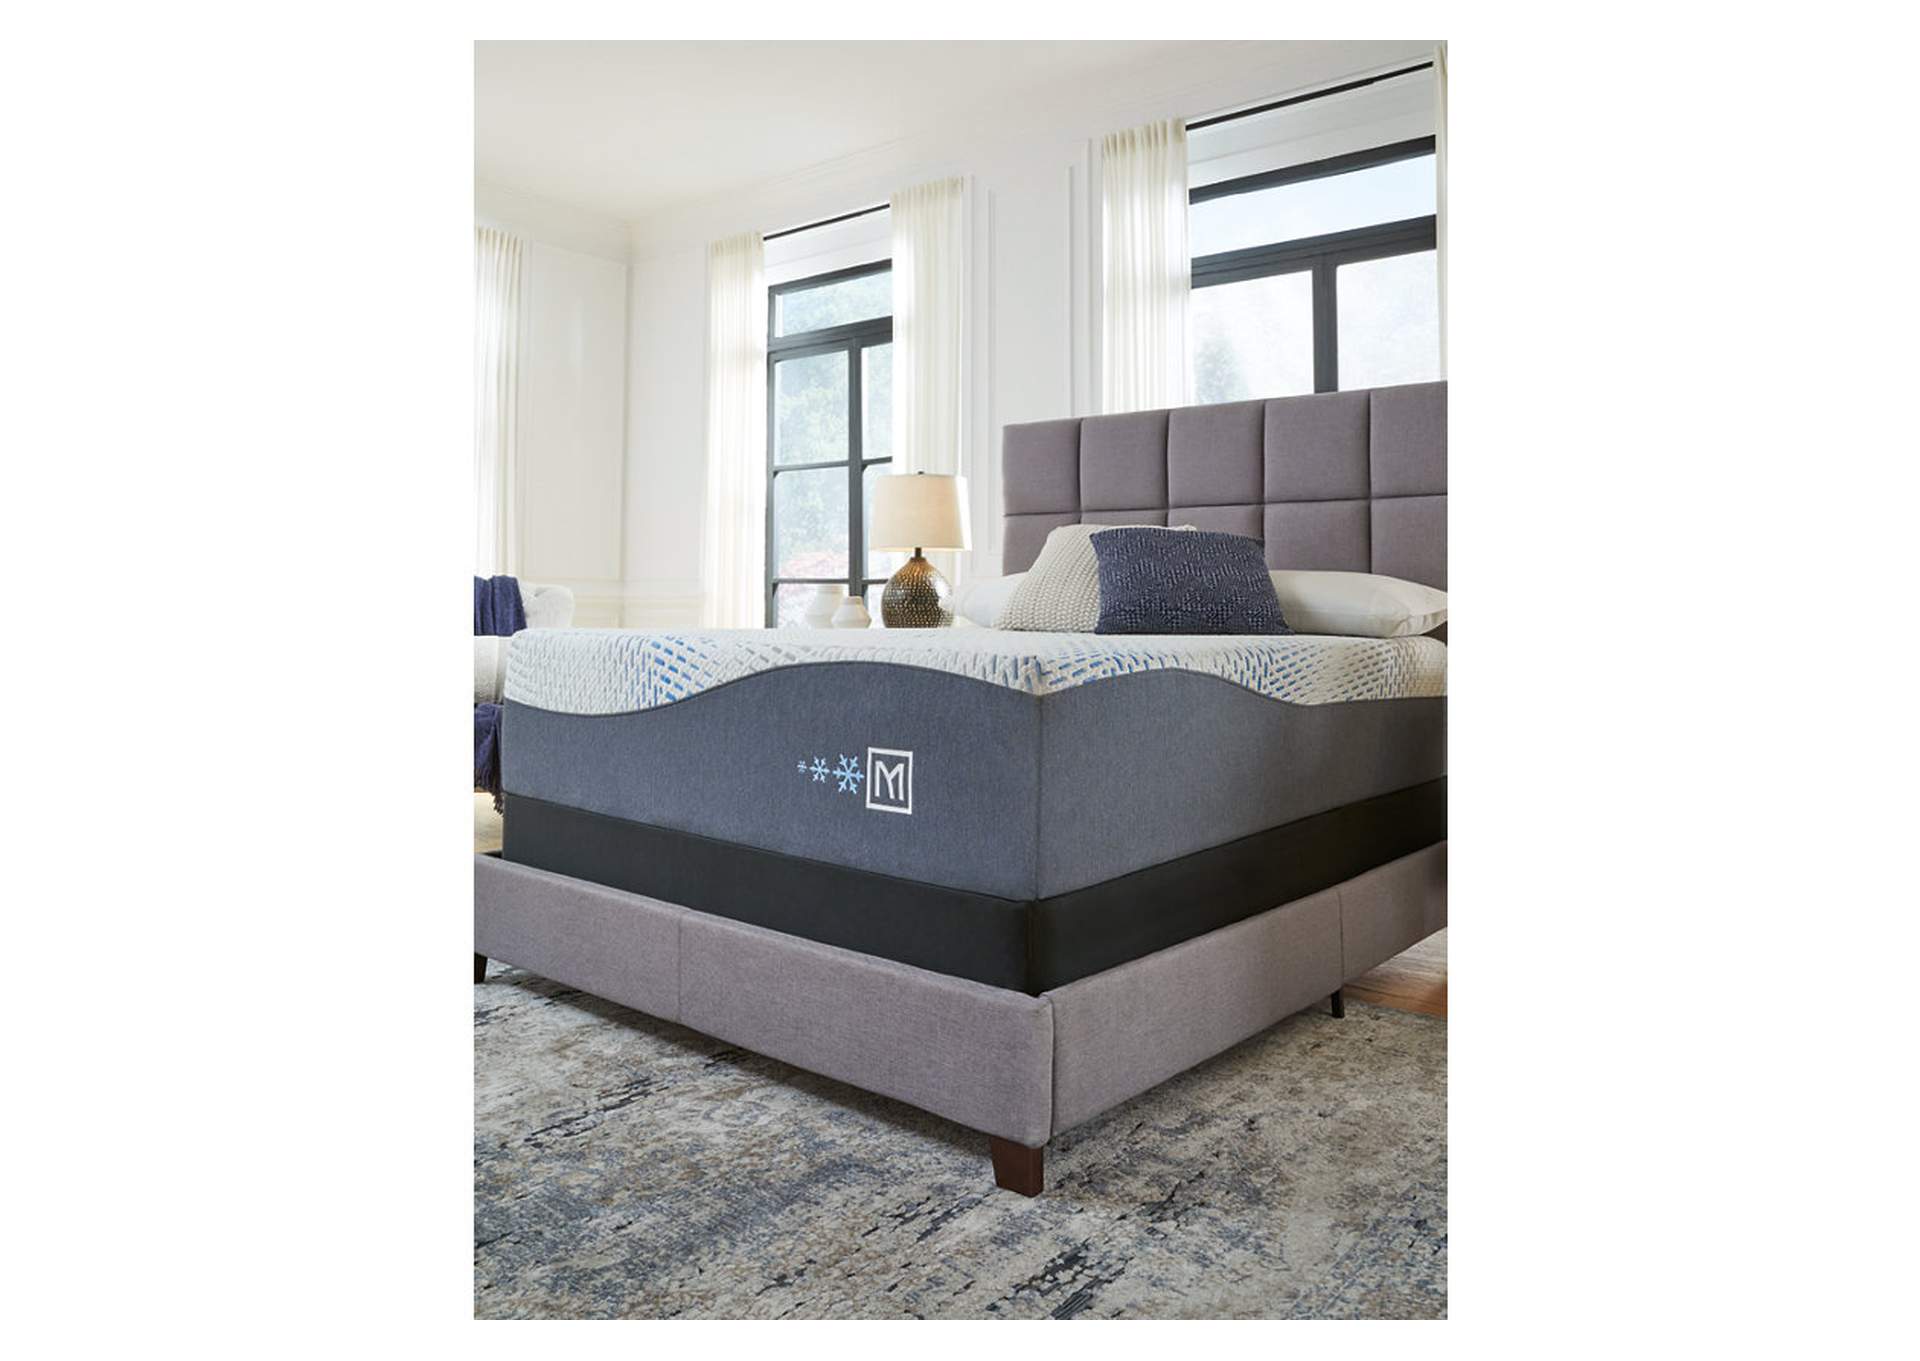 Millennium Cushion Firm Gel Memory Foam Hybrid Twin XL Mattress,Sierra Sleep by Ashley